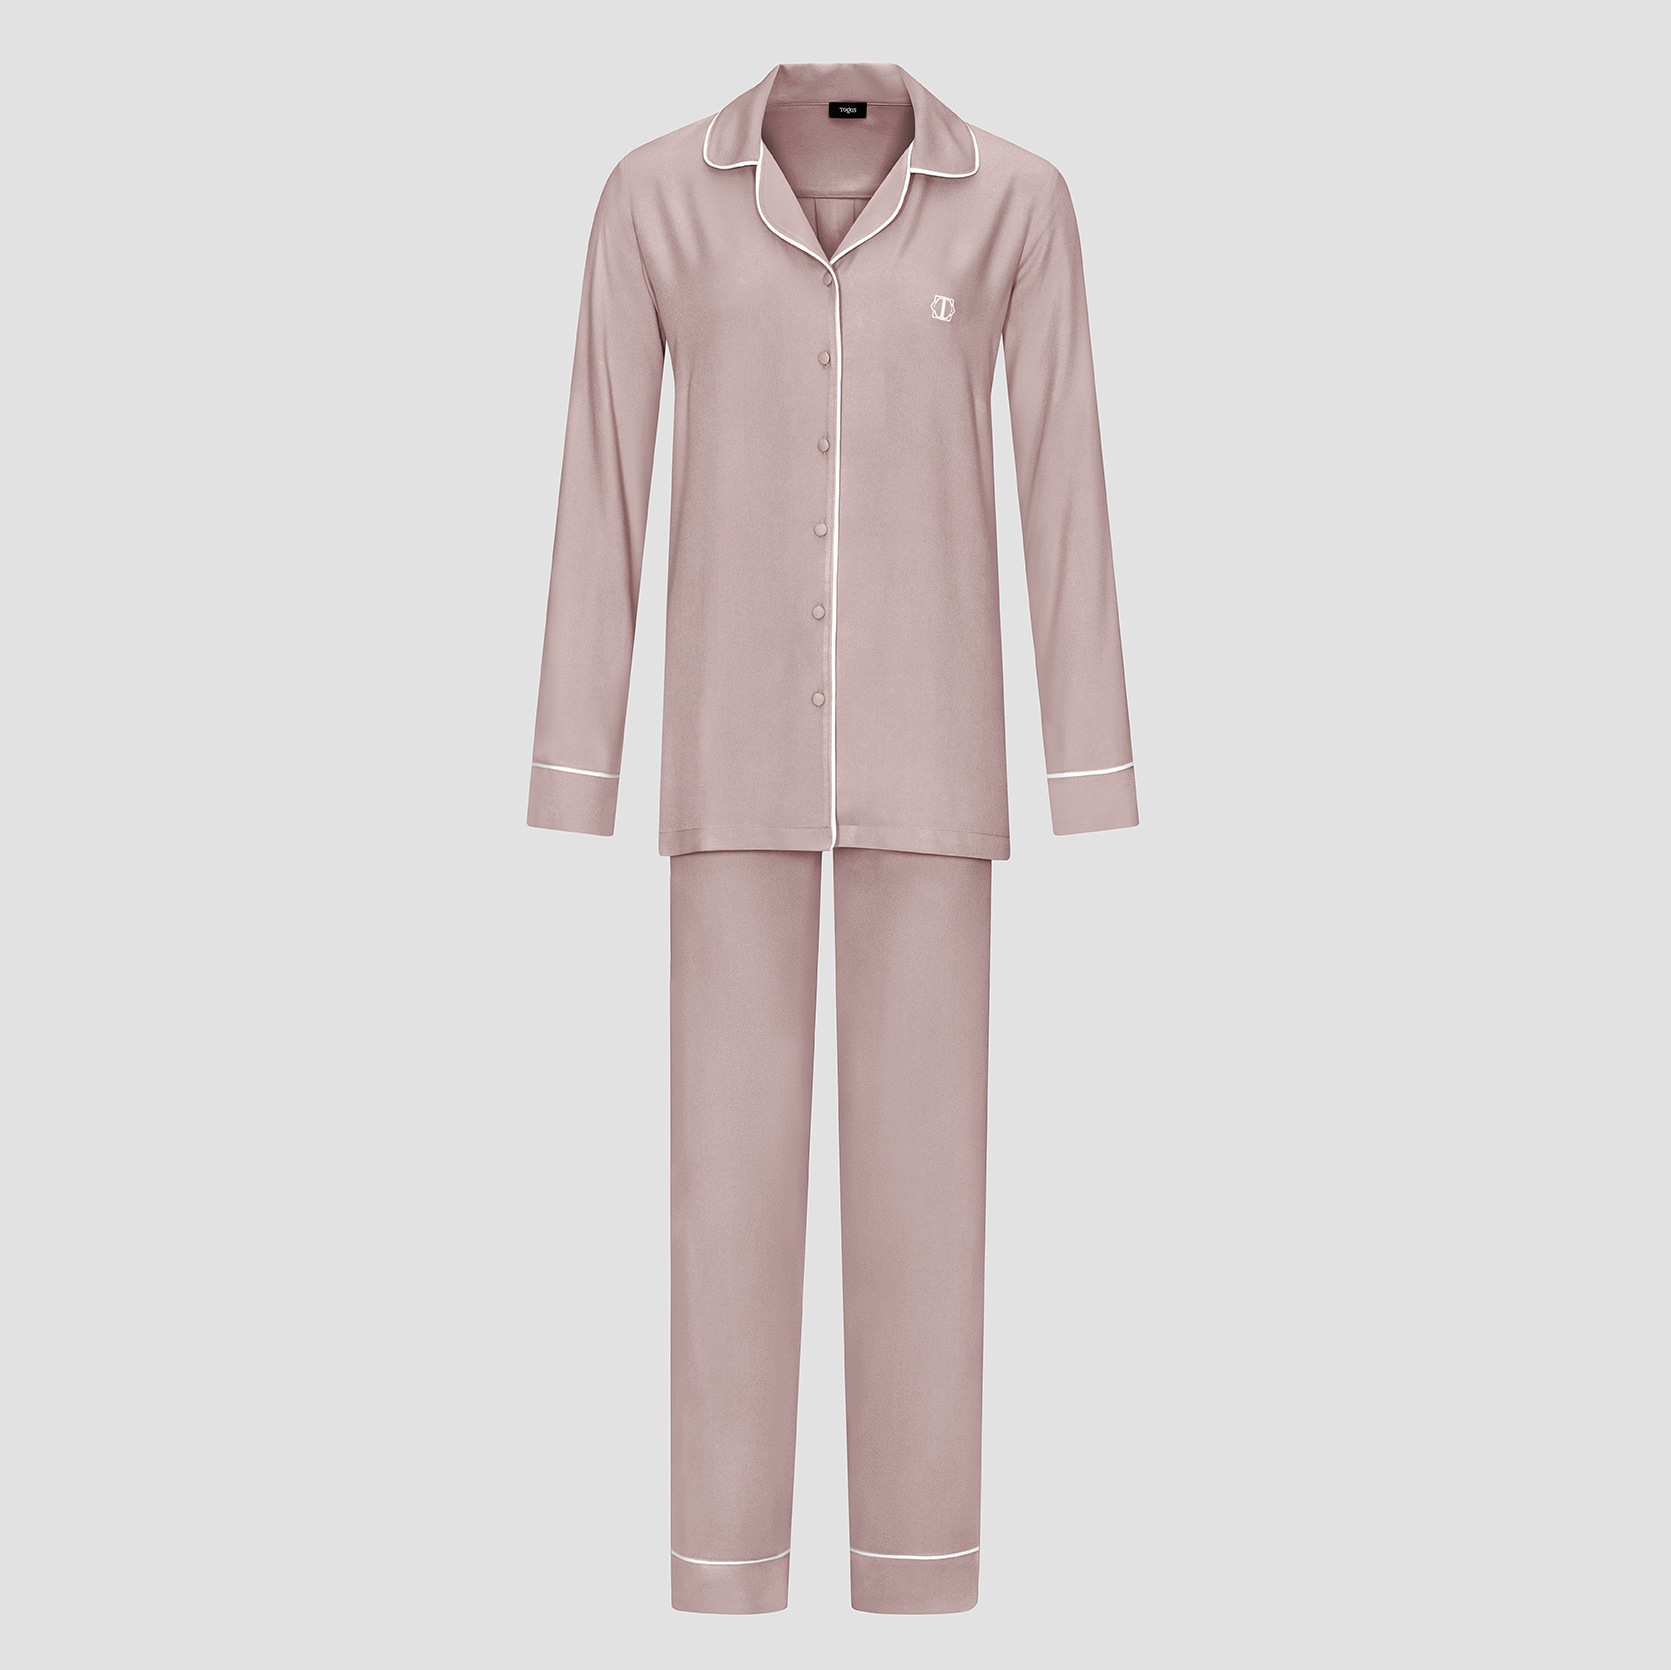 Пижама женская Togas Рамель розовая 2 предмета пижама рубашка шорты